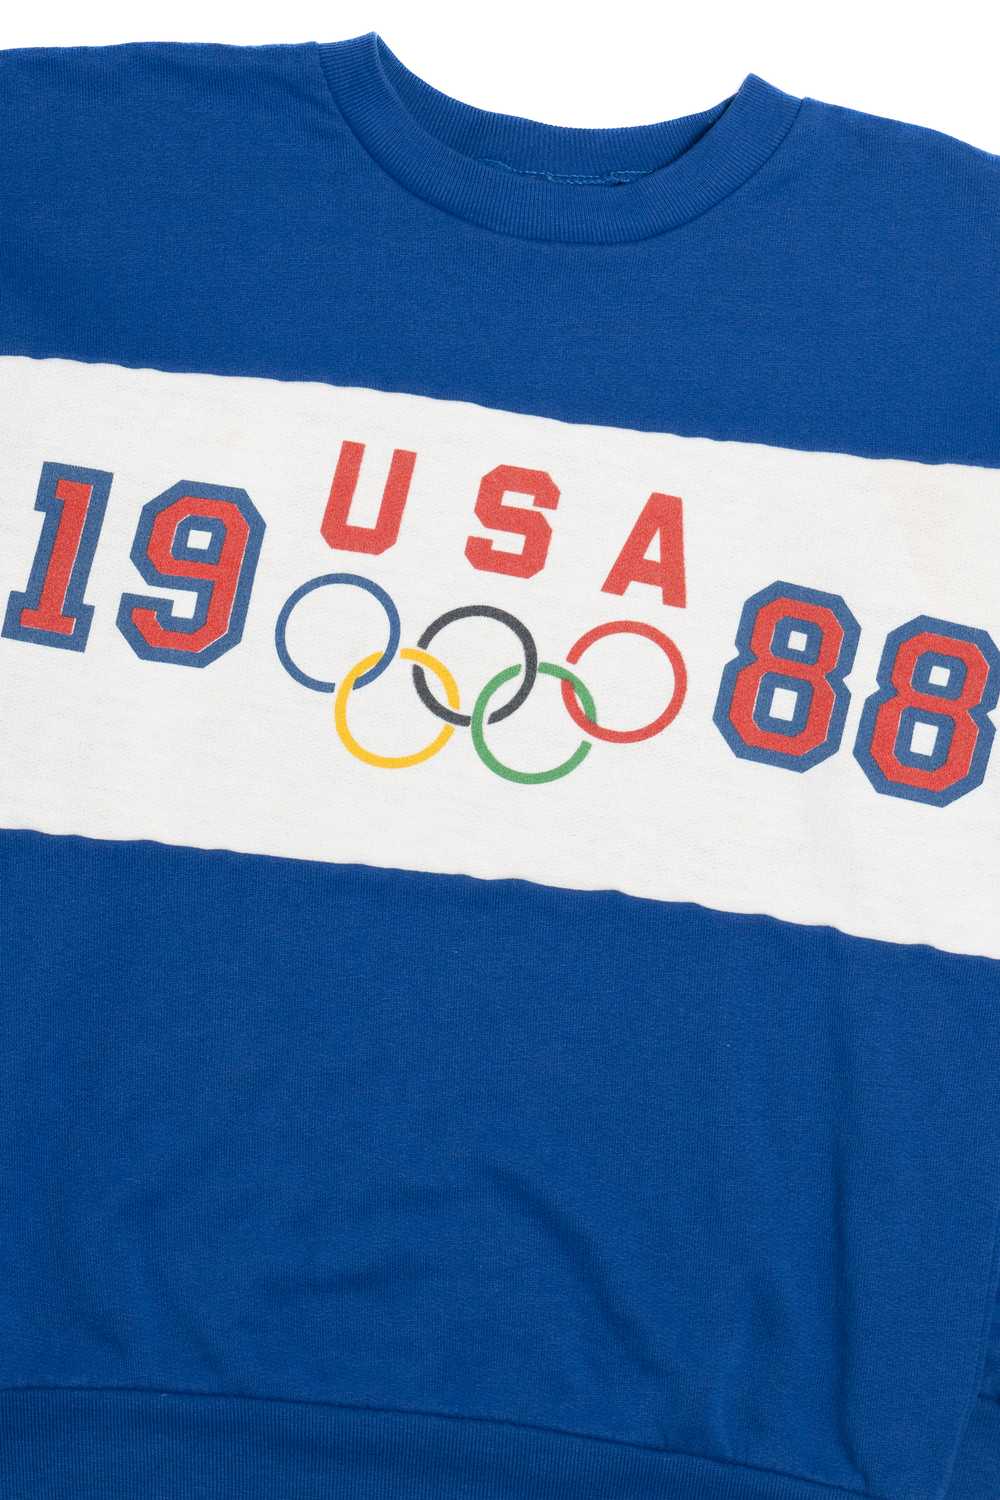 Vintage 1988 USA Olympics Sweatshirt - image 2